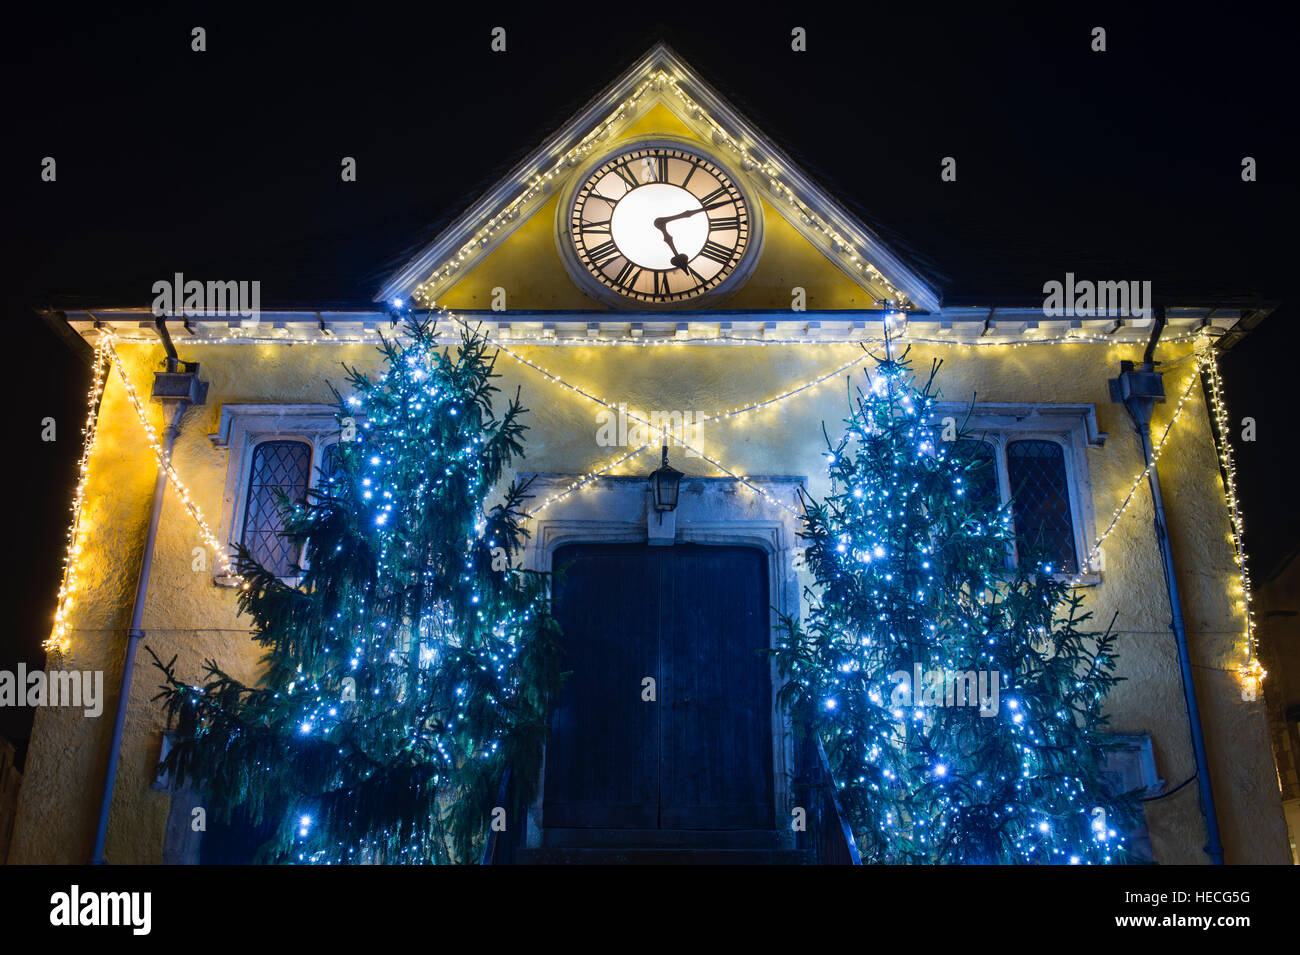 Les arbres de Noël et les lumières autour de la maison pendant la nuit. Tetbury Gloucestershire, Angleterre Banque D'Images